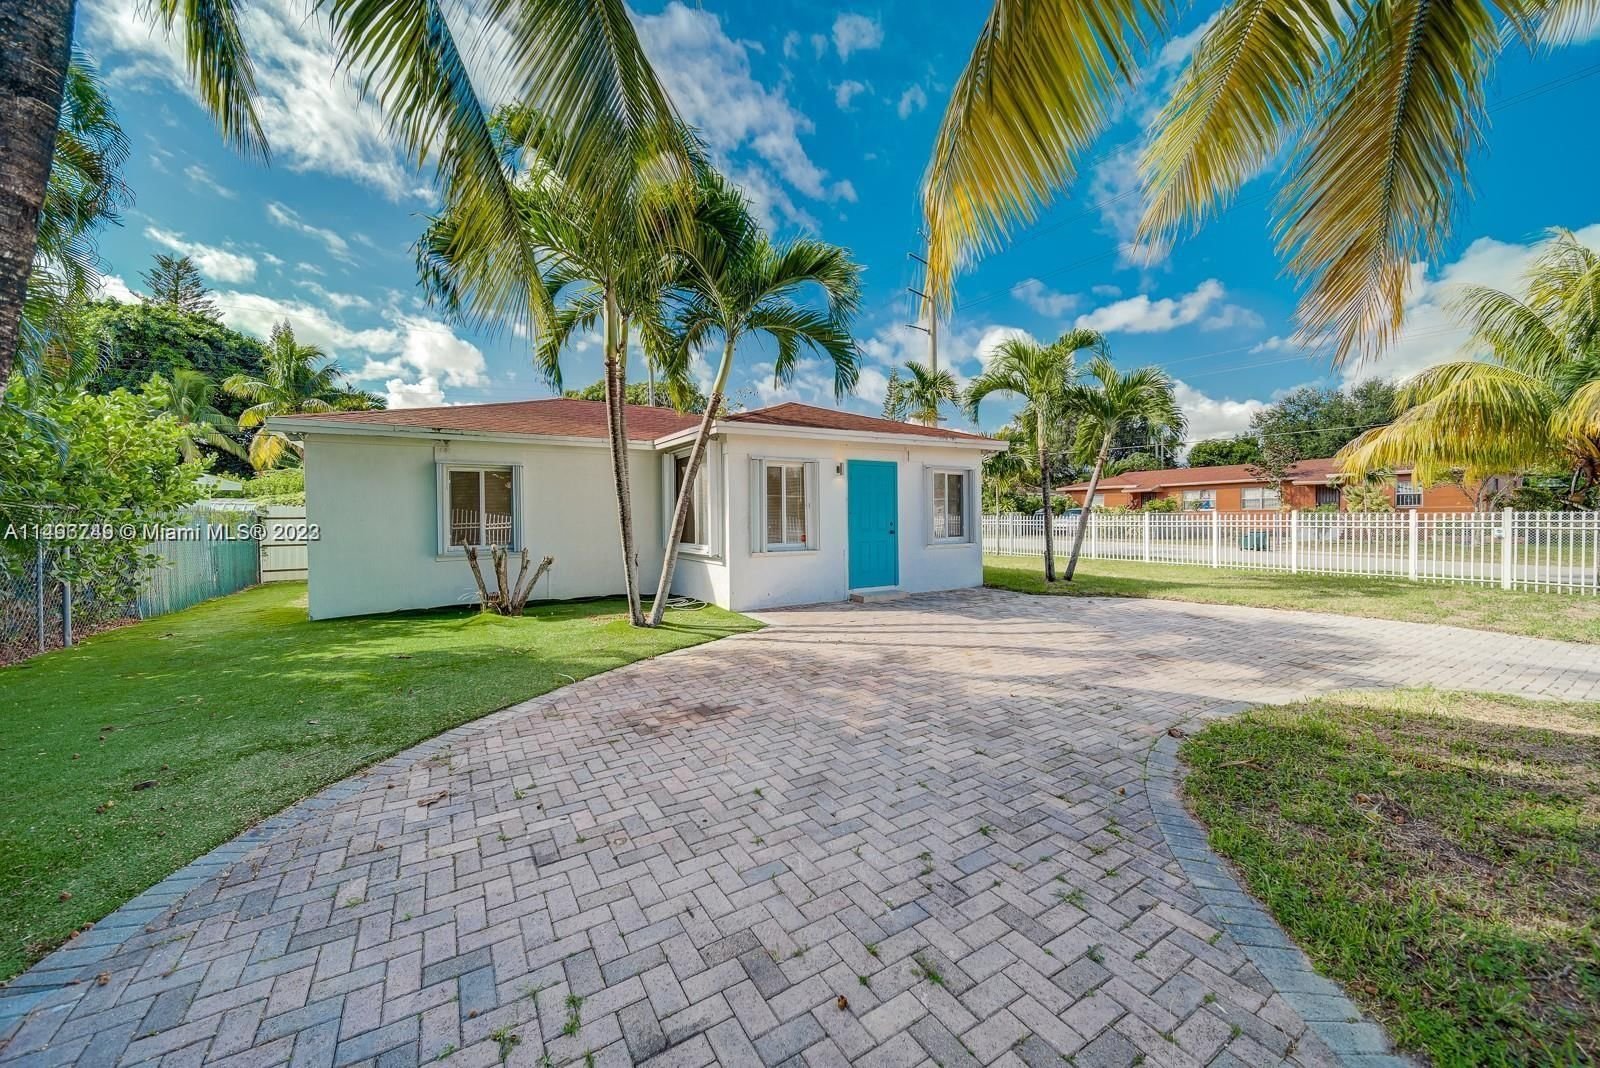 Real estate property located at 442 100th St, Miami-Dade County, SHORES ESTATES, Miami, FL